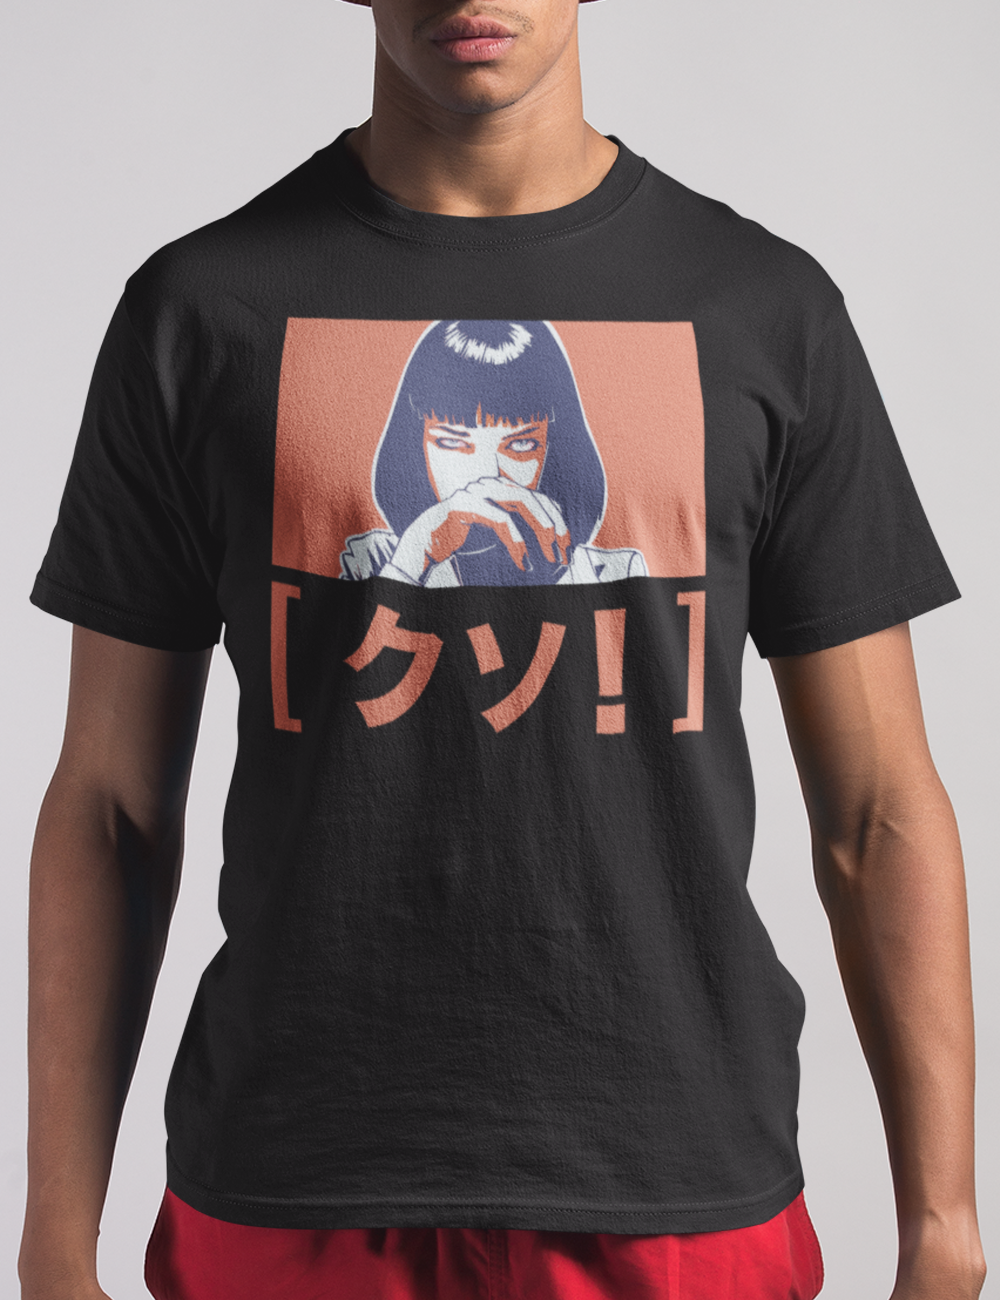 Kuso! Men's Classic T-Shirt OniTakai